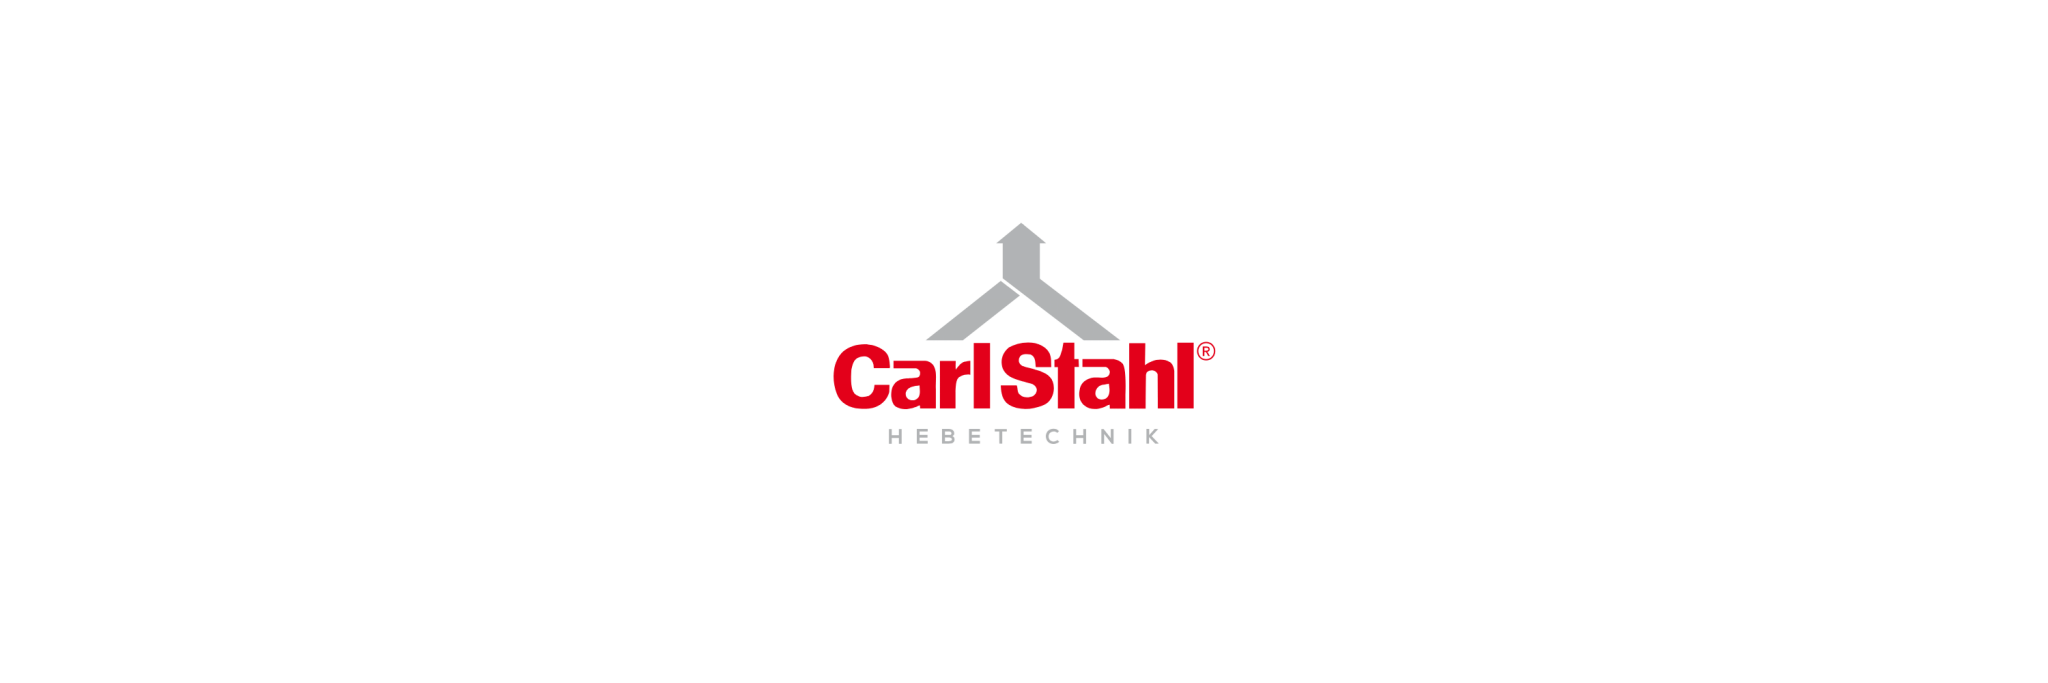 Carl Stahl - Klenk Maschinenhandel